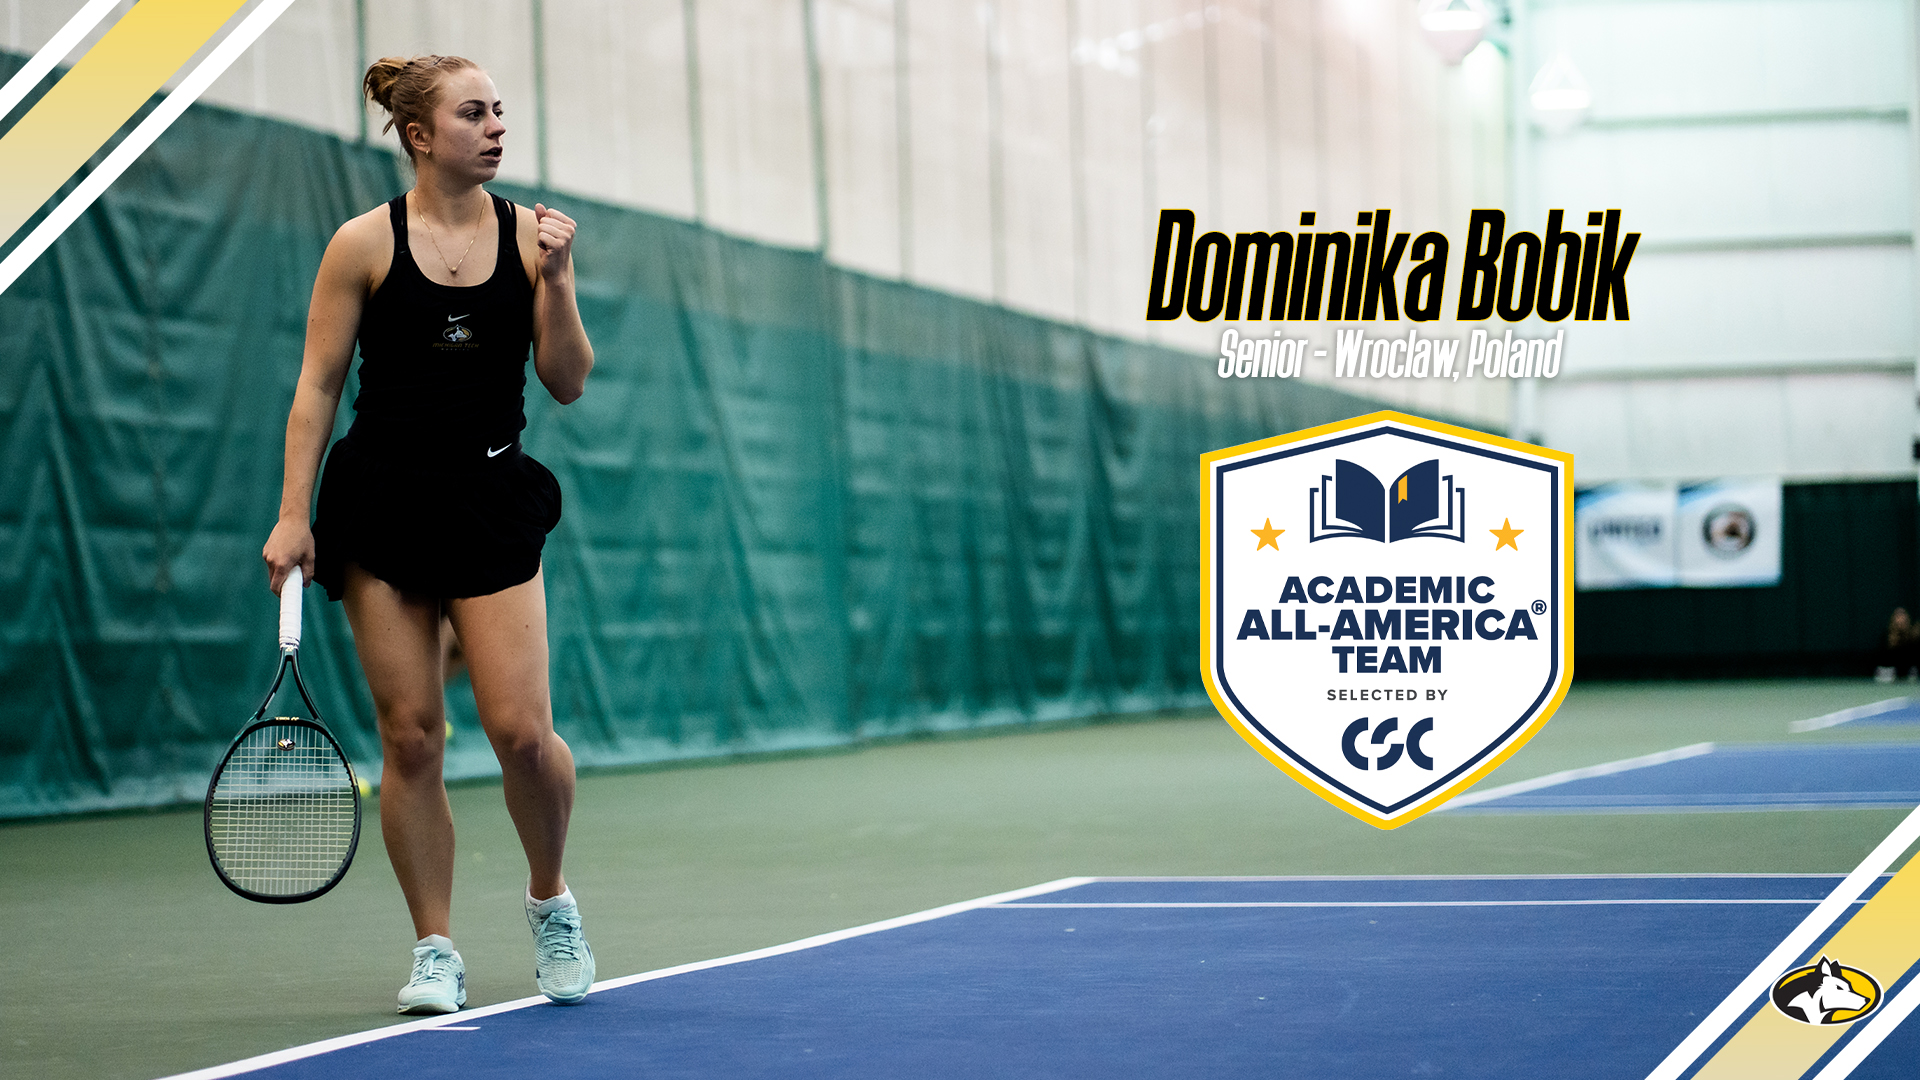 Dominika Bobik named CSC Academic All-America